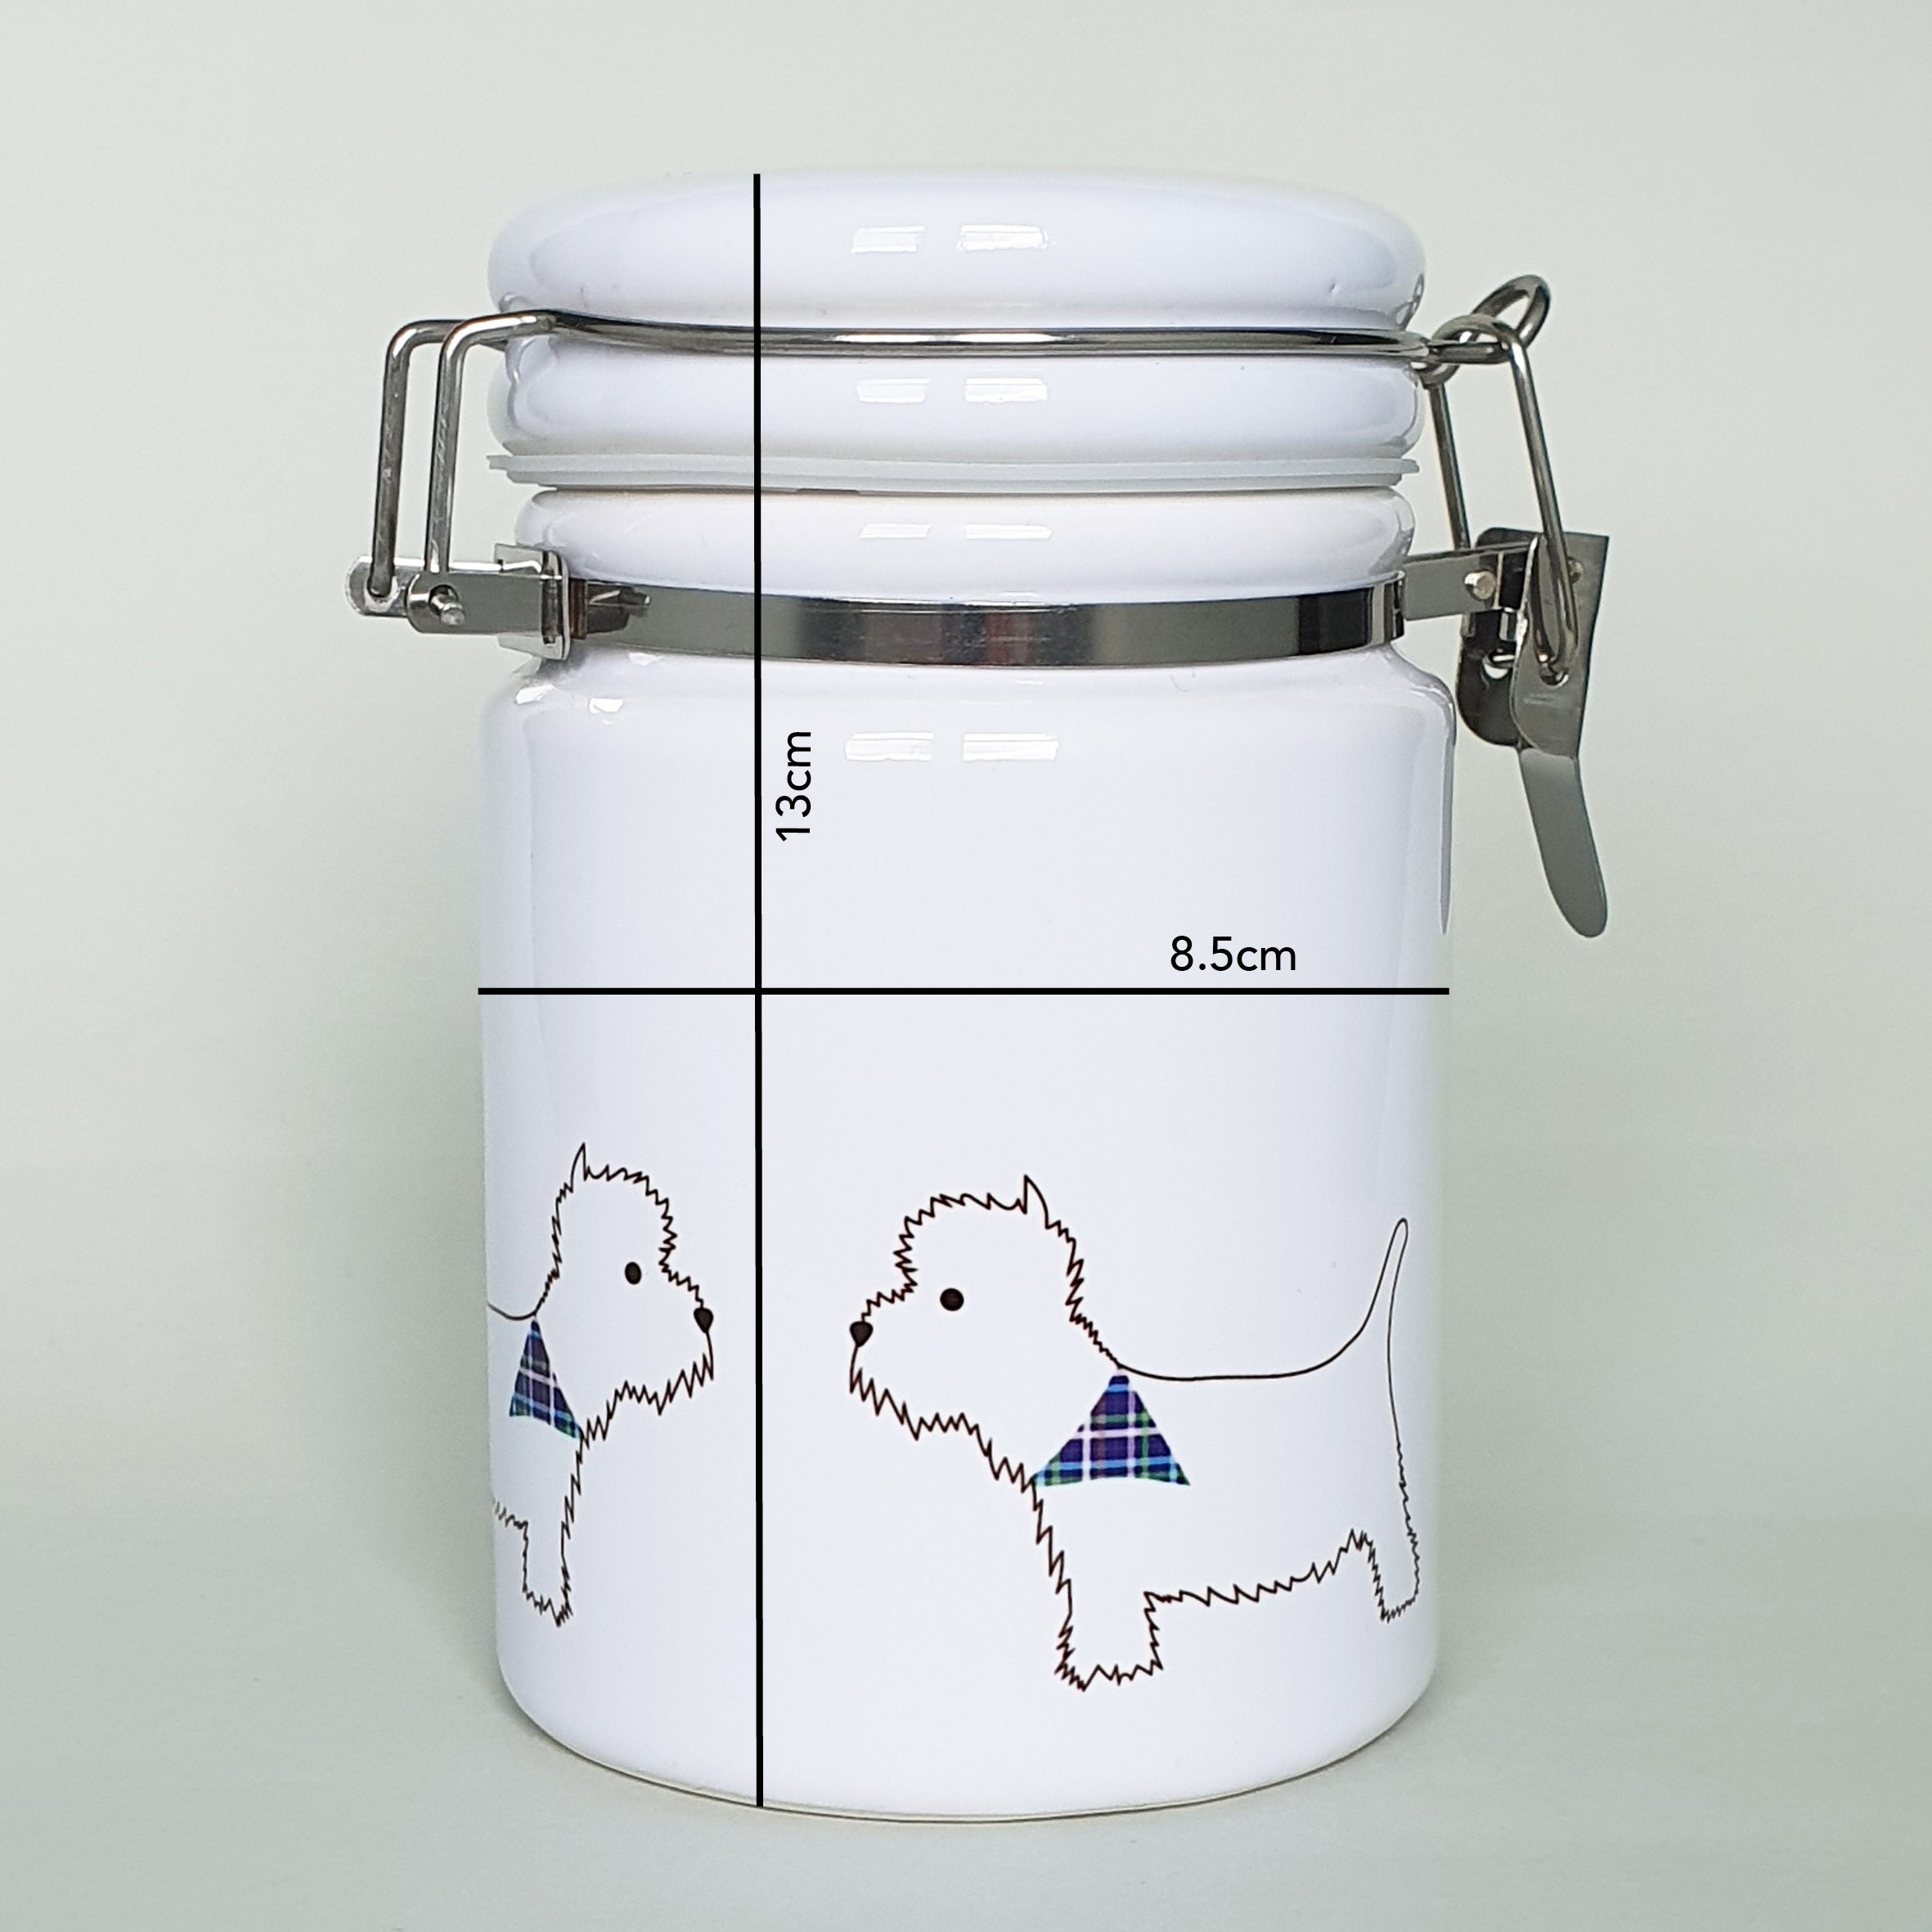 West Highland Terrier (Westie) Ceramic Storage Jar